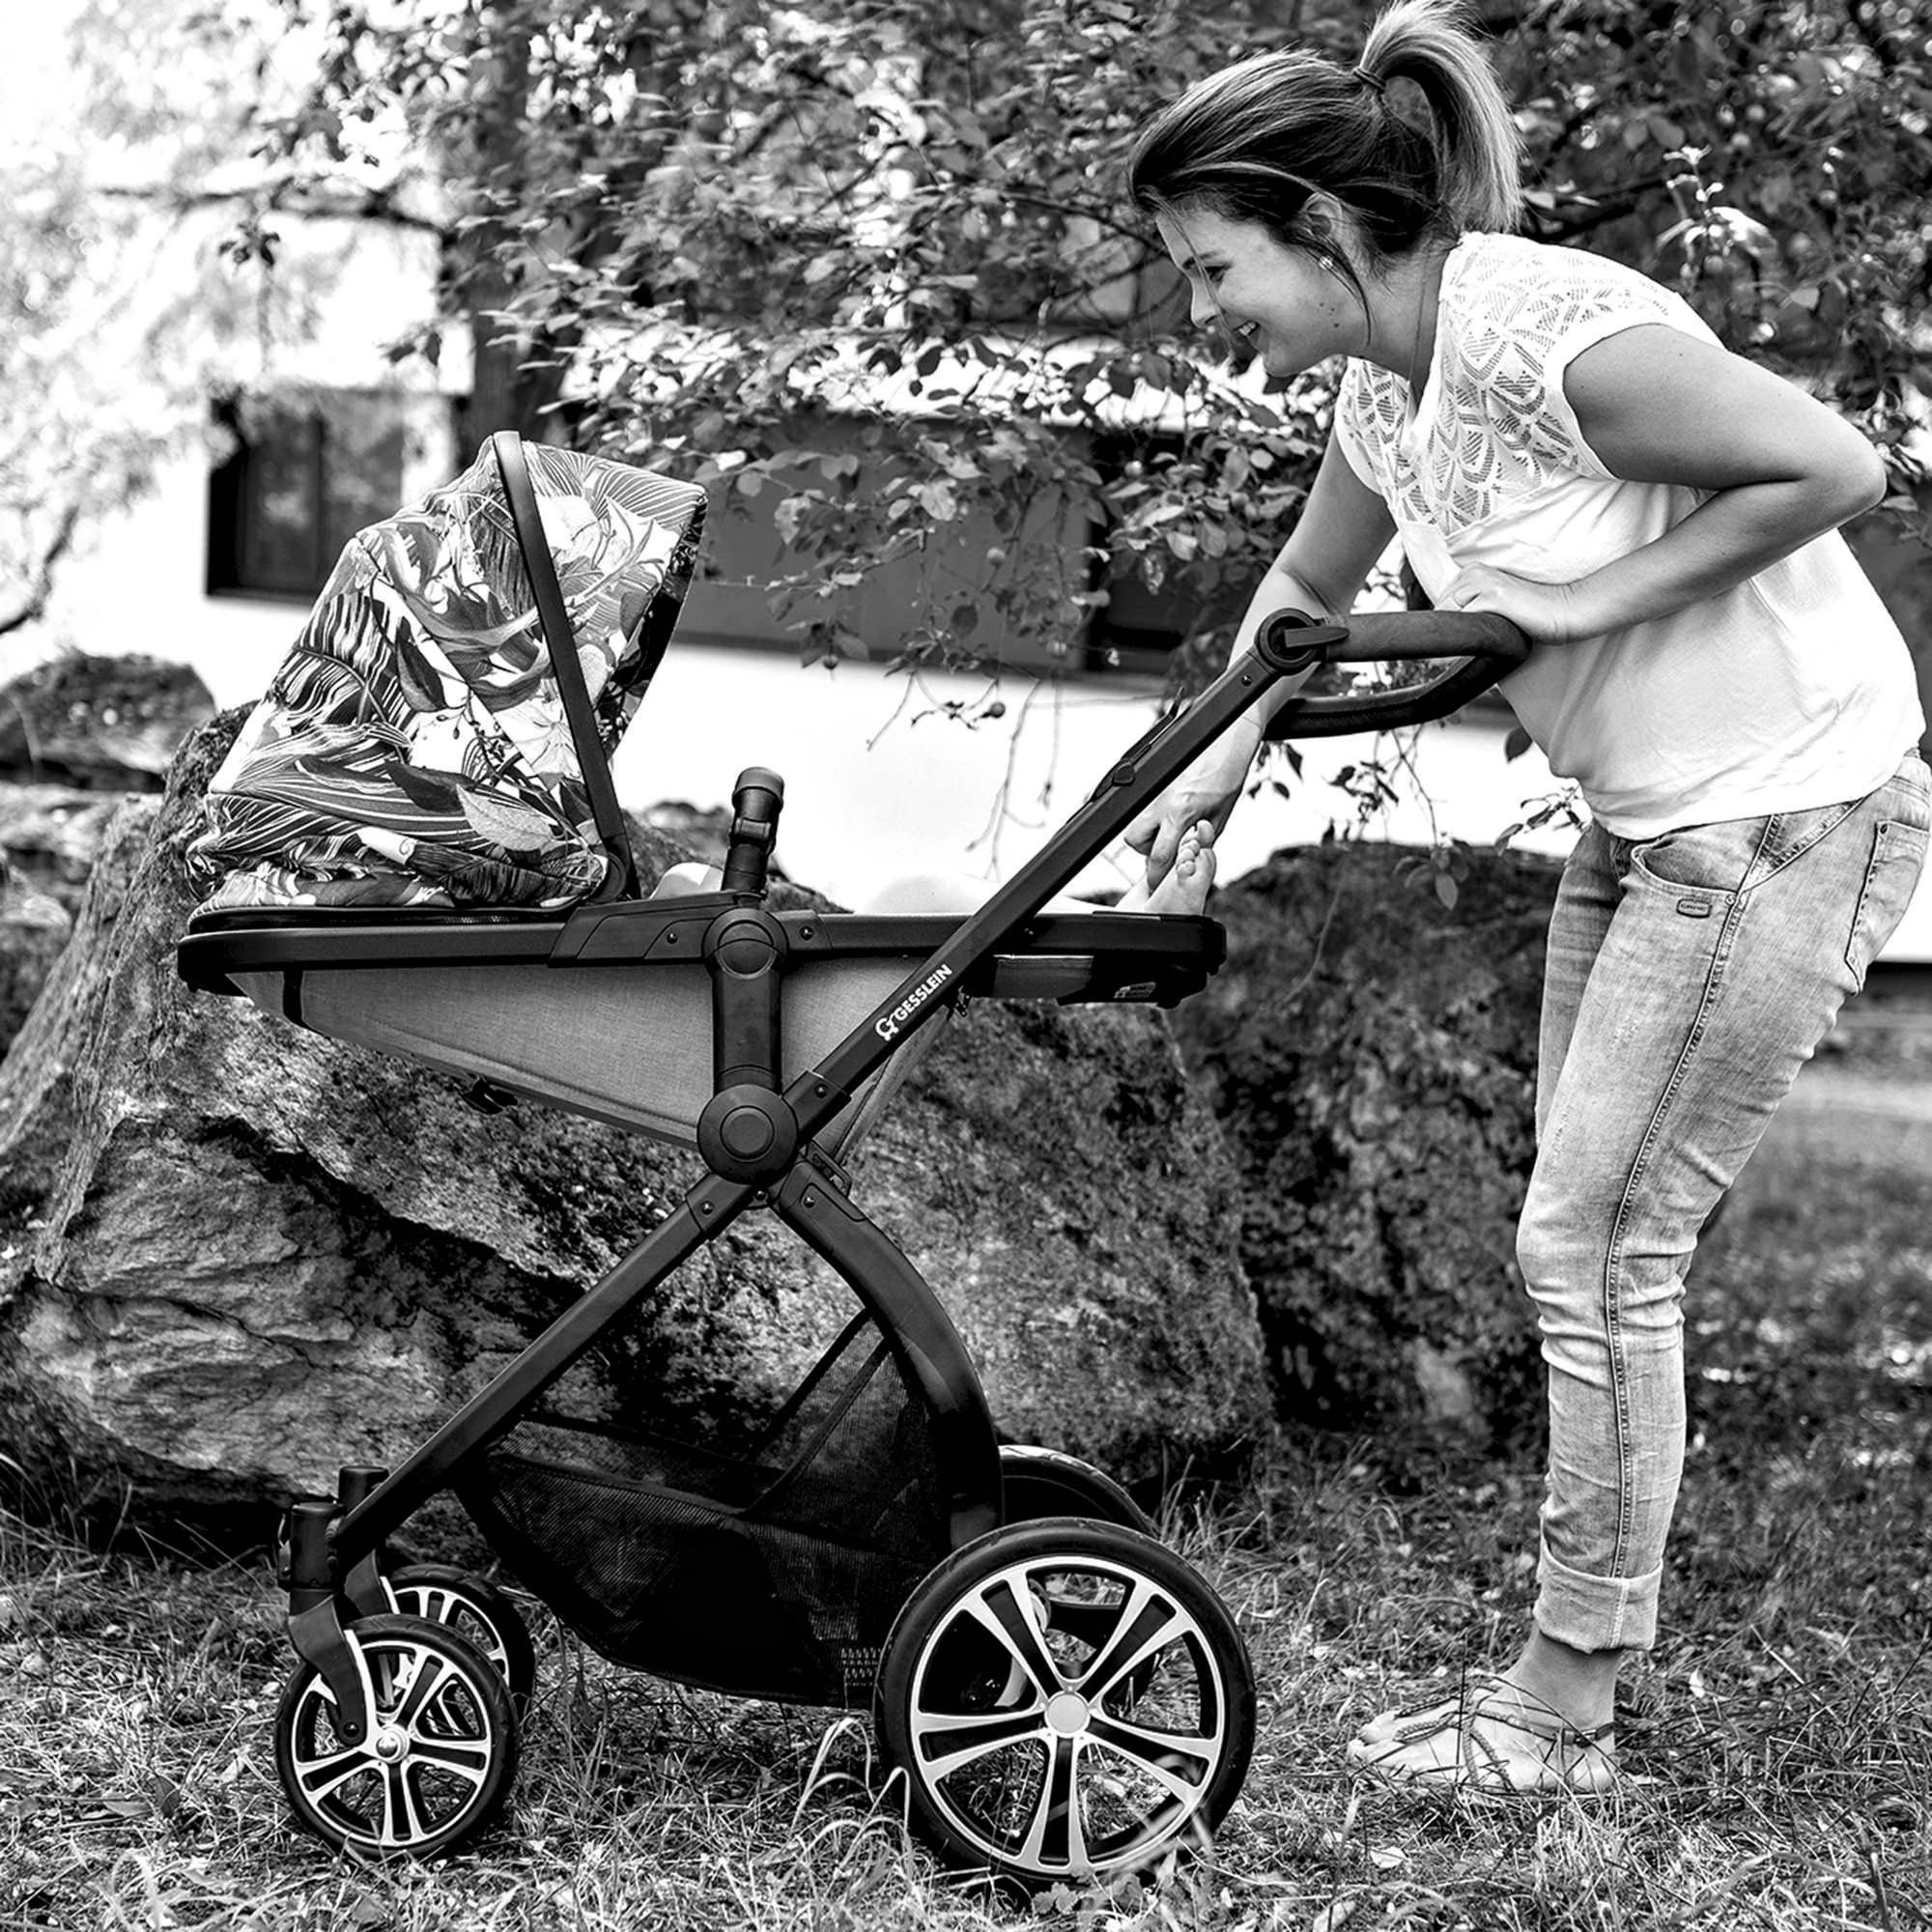 Kombi-Kinderwagen FX4 Babywanne mit Gesslein Aufsatz Soft+ schiefergrau, Babyschalenadapter und mit Life, schwarz/cognac, C3